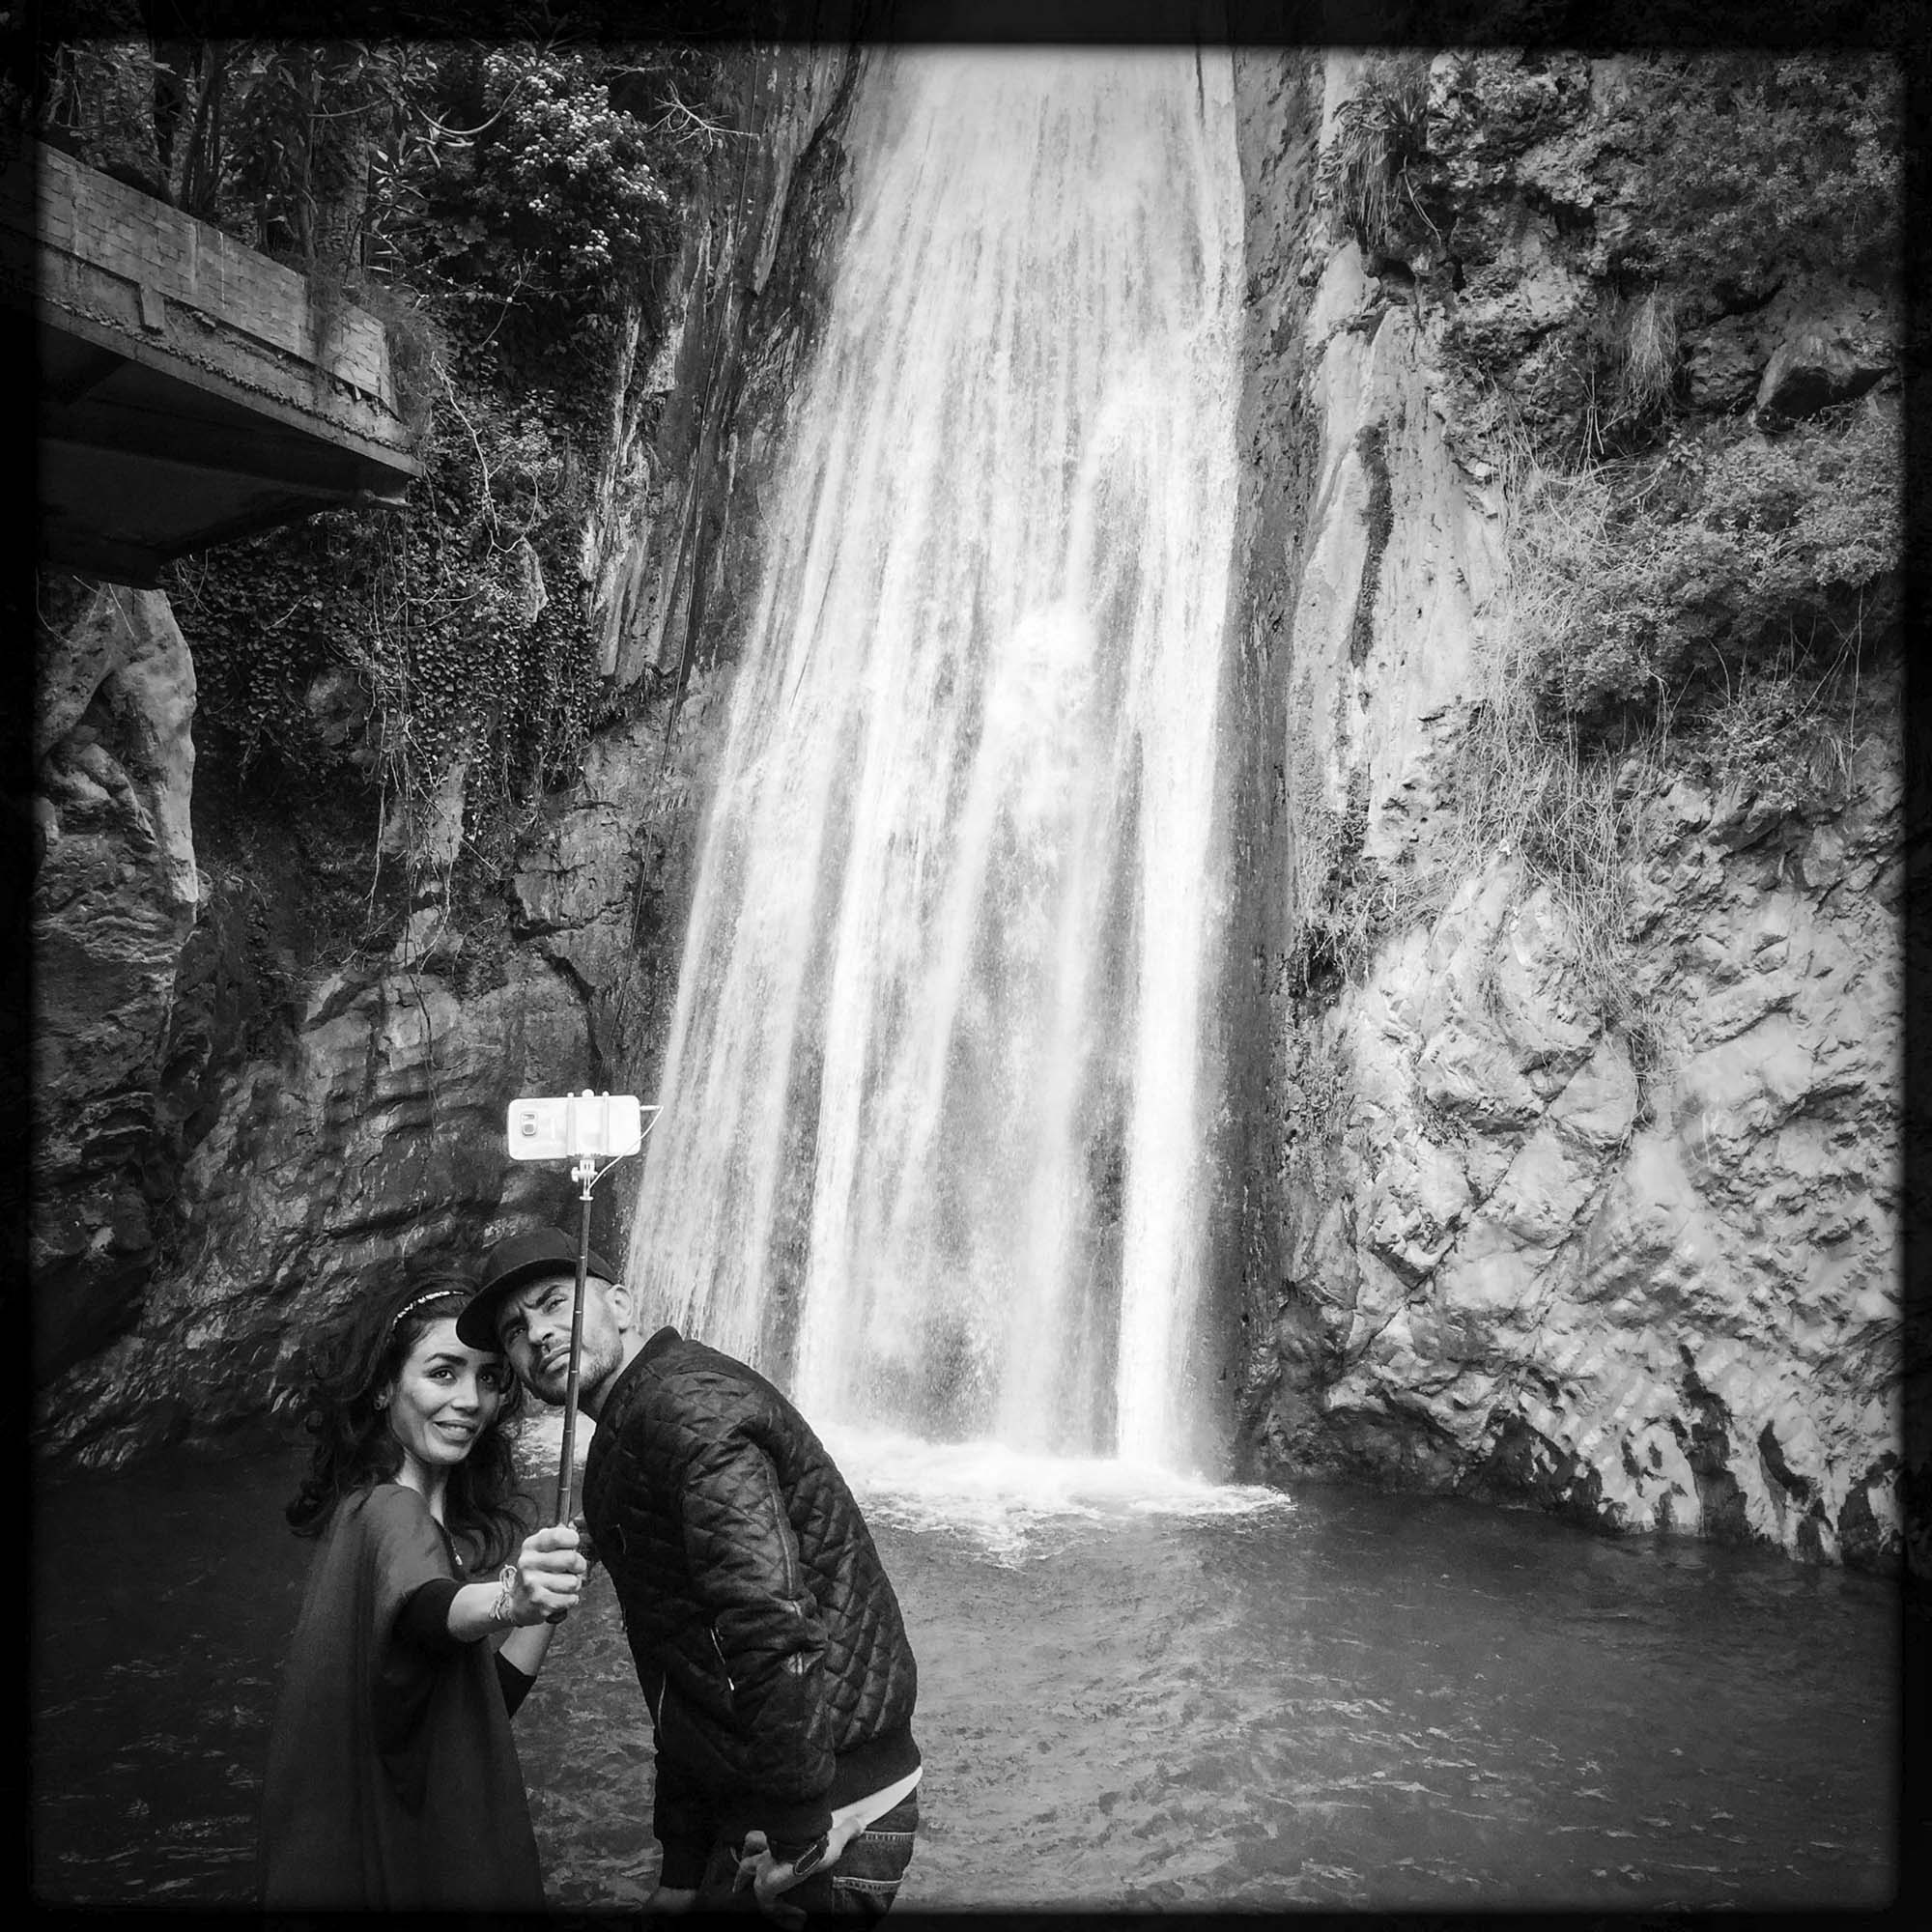 Selfie entre amoureux devant des chutes d'eau en Kabylie. 13/02/2016, ALGERIE.